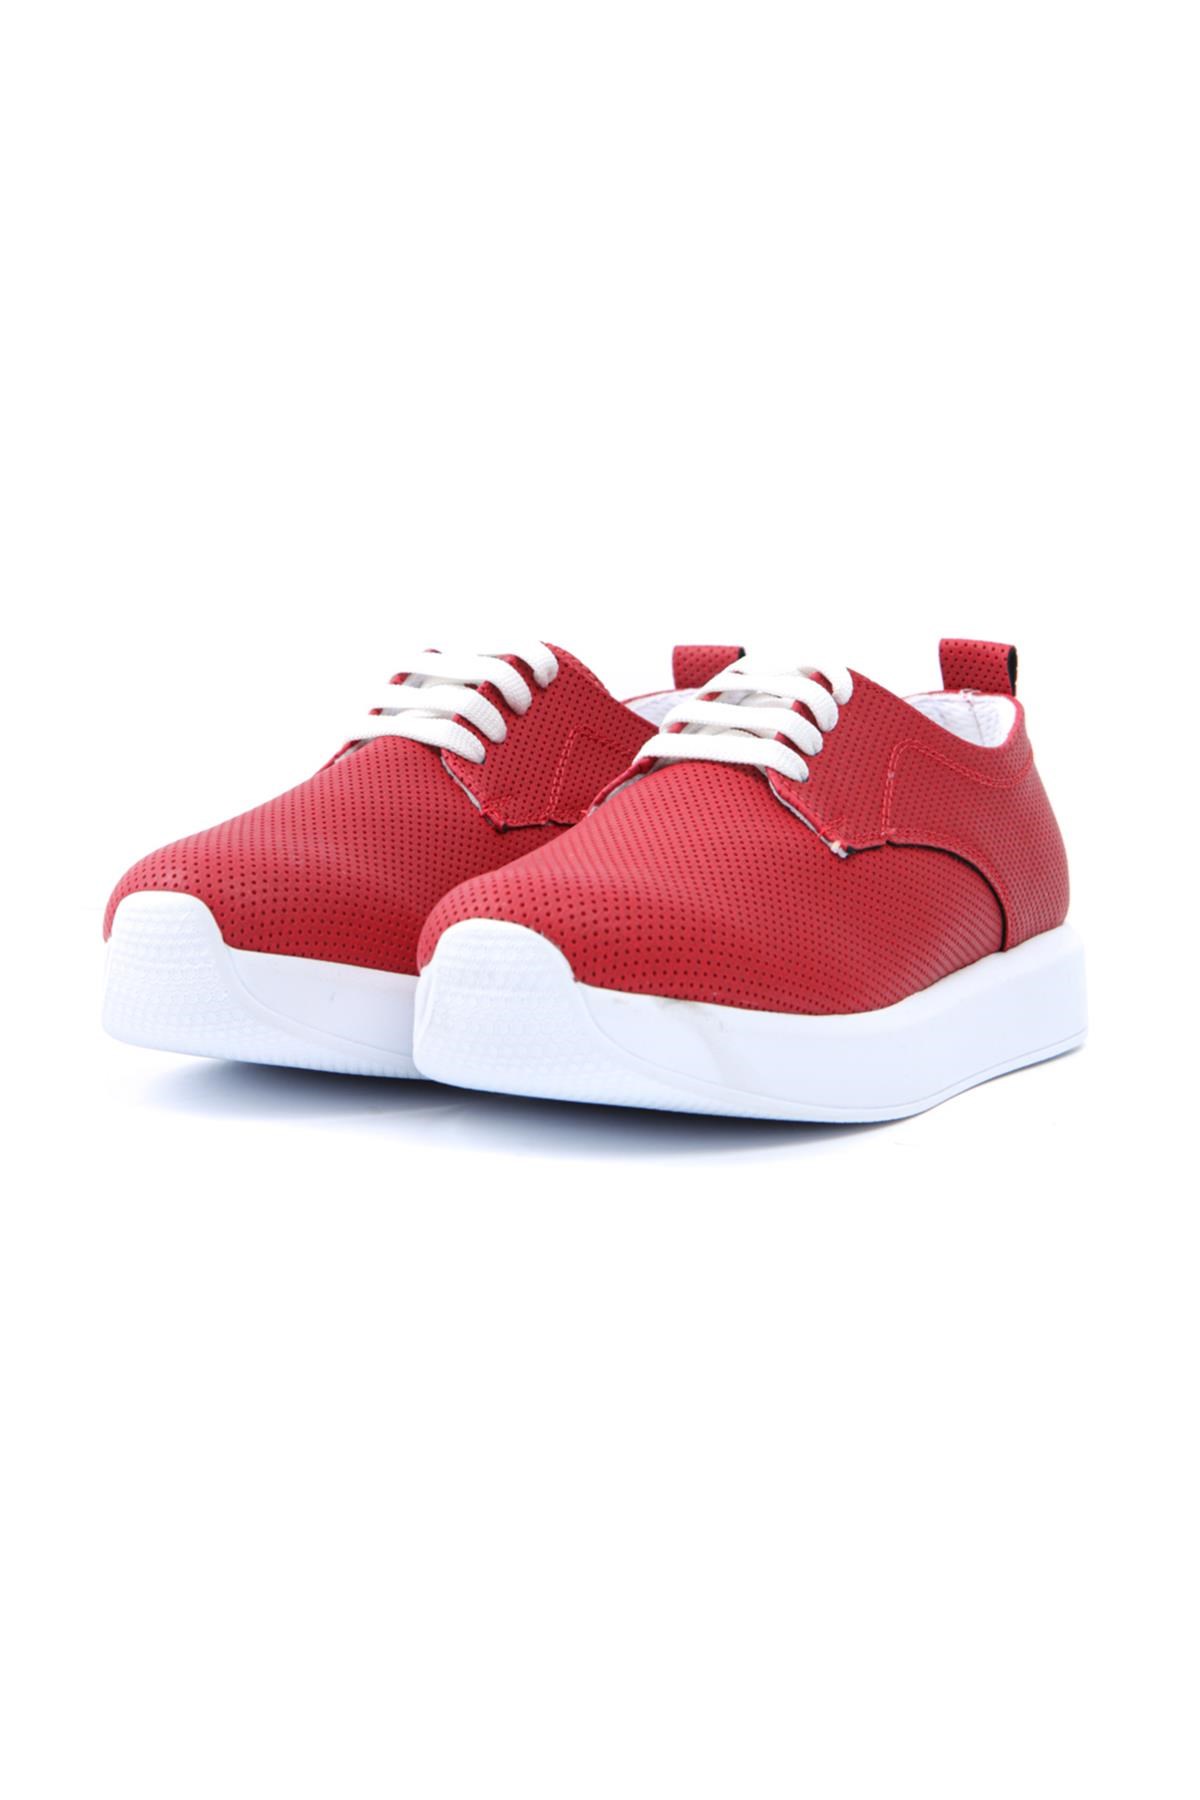 Jess Kırmızı Bağcıklı Düz Sneakers Spor Ayakkabı | Limoya.com ile Modayı  Keşfet!